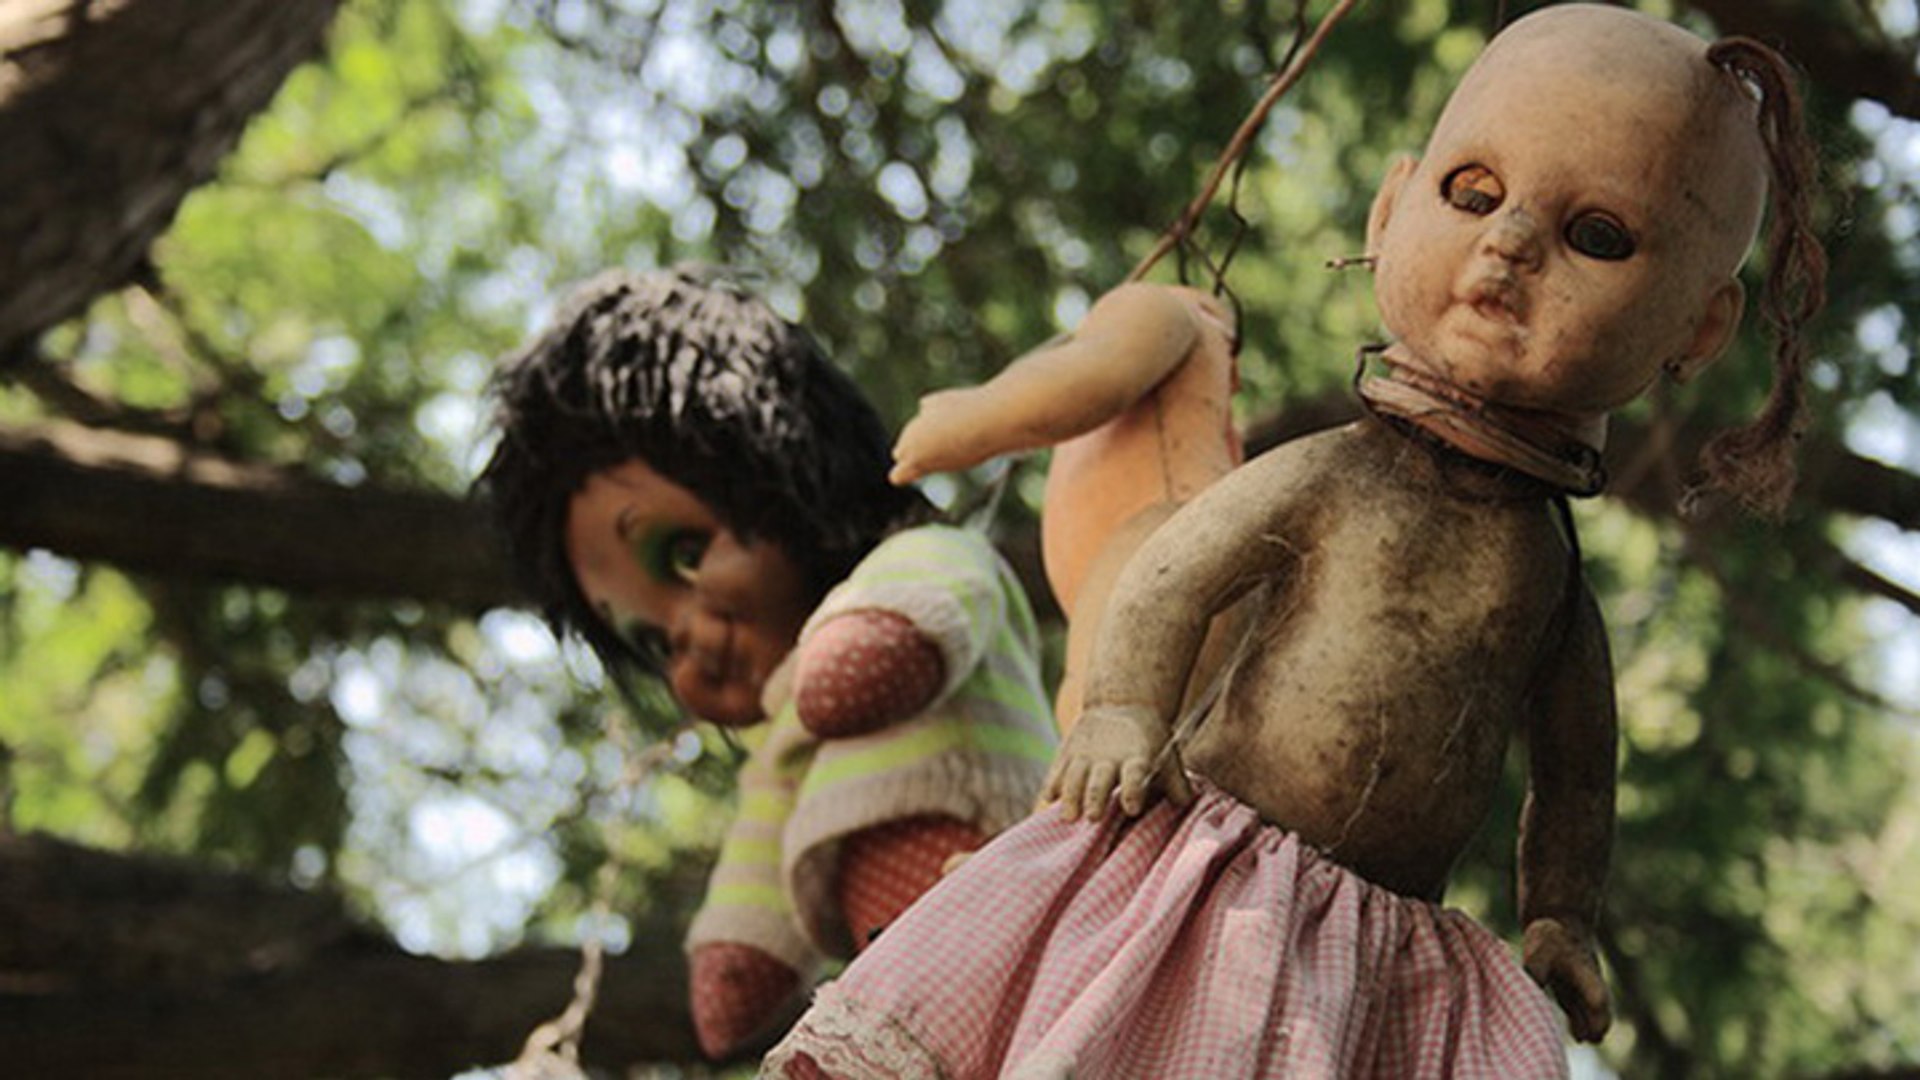 Une île qui héberge des poupées effrayantes - Vidéo Dailymotion